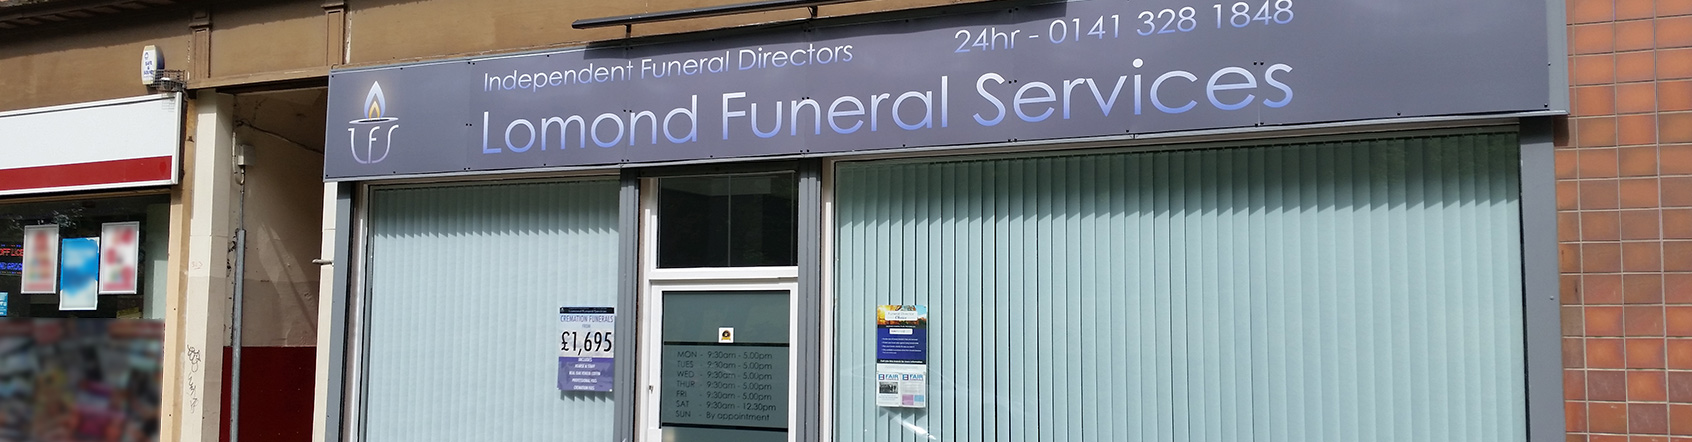 Glasgow Funeral Directors